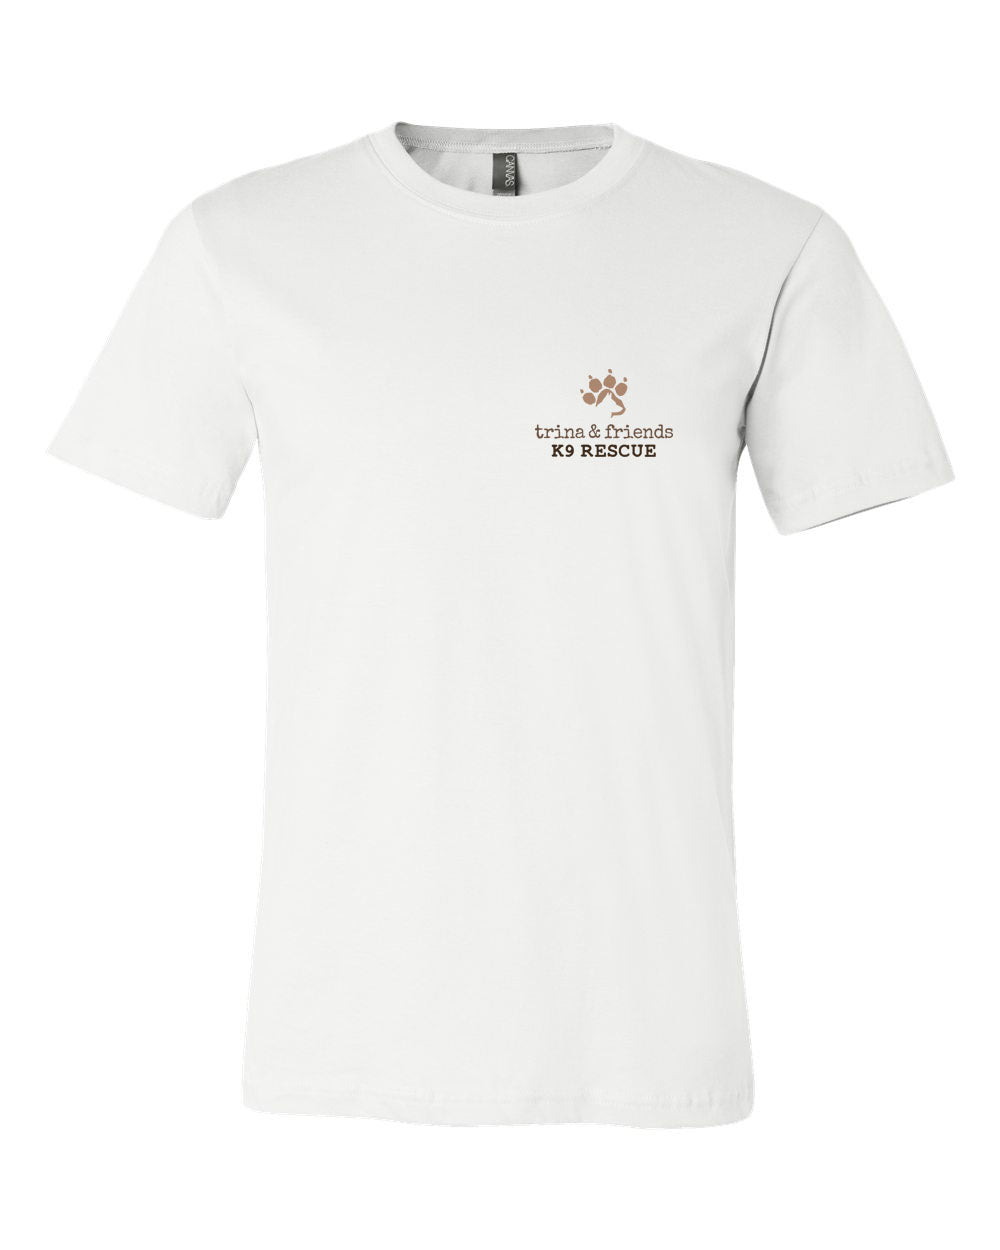 Friends 5 Trina T-Shirt & design